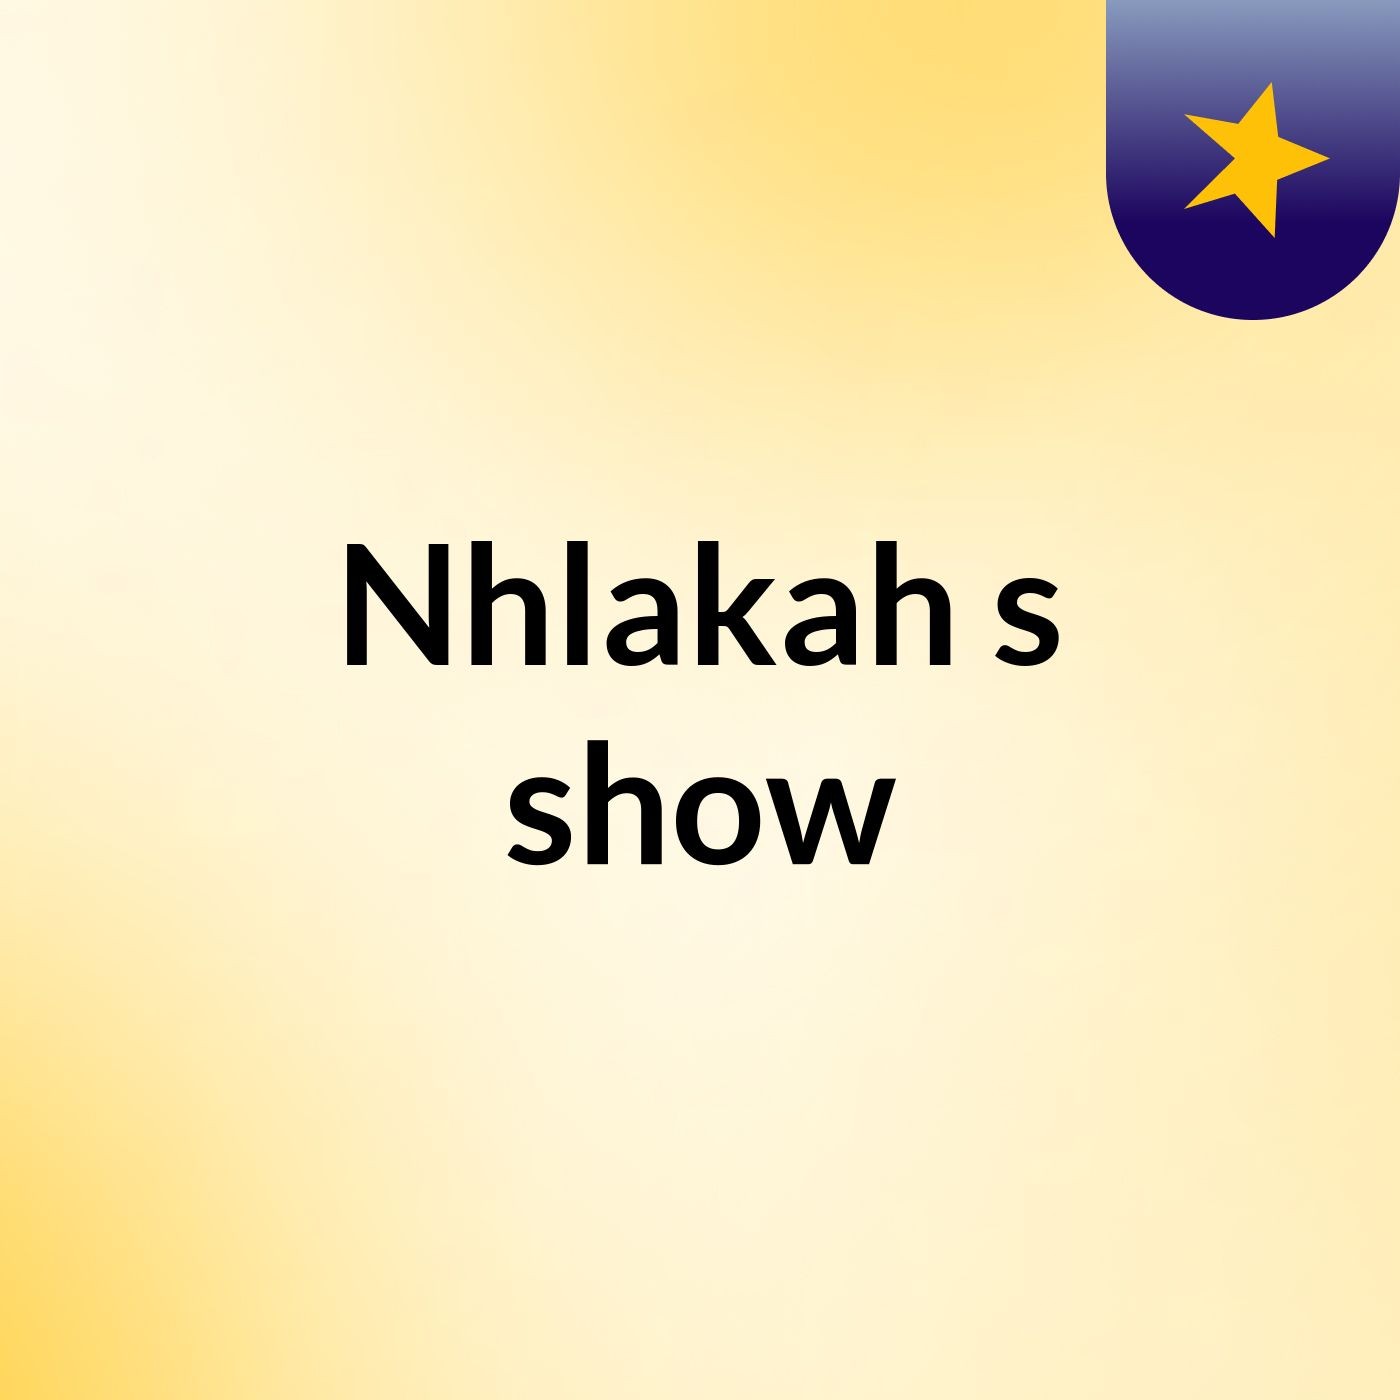 Nhlakah's show